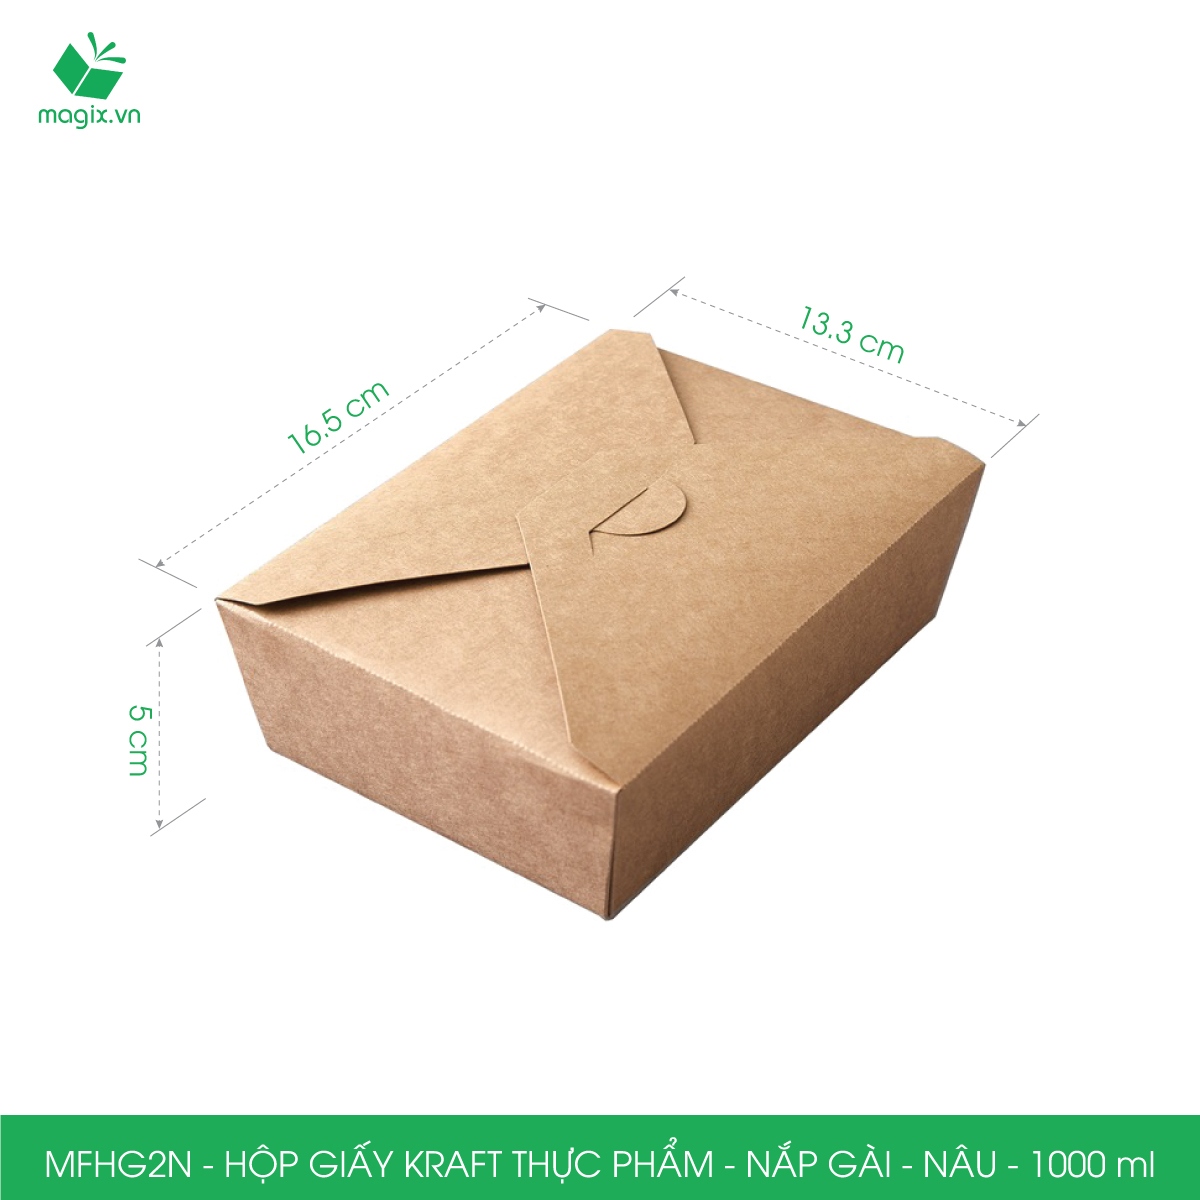 MFHG2N - 50 hộp giấy kraft thực phẩm 1000ml, hộp giấy nắp gập màu nâu đựng thức ăn, hộp giấy nắp gài gói đồ ăn mang đi 